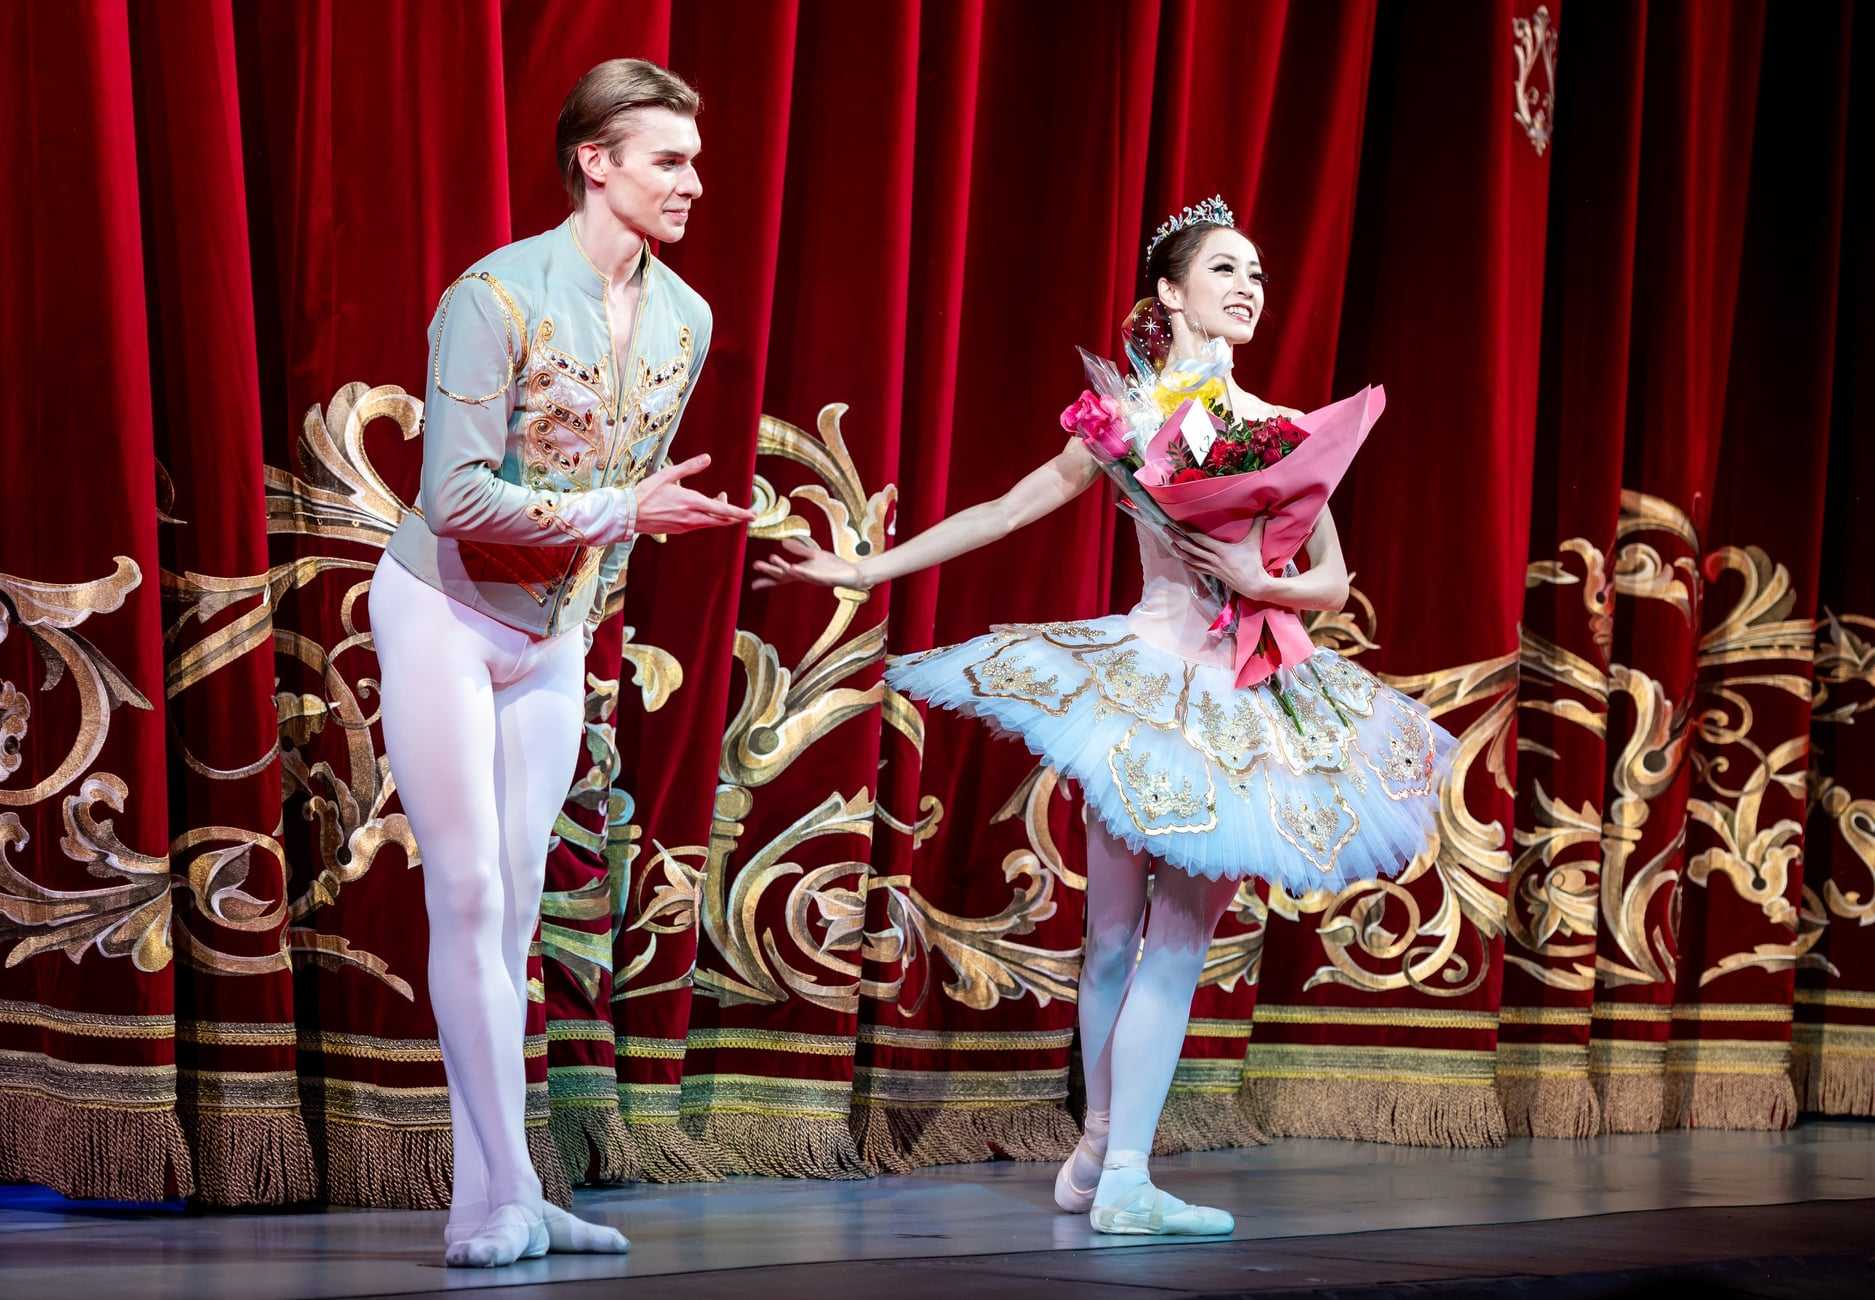 Лири Вакабаяси впервые выступила на челябинской сцене в балете «Пахита»